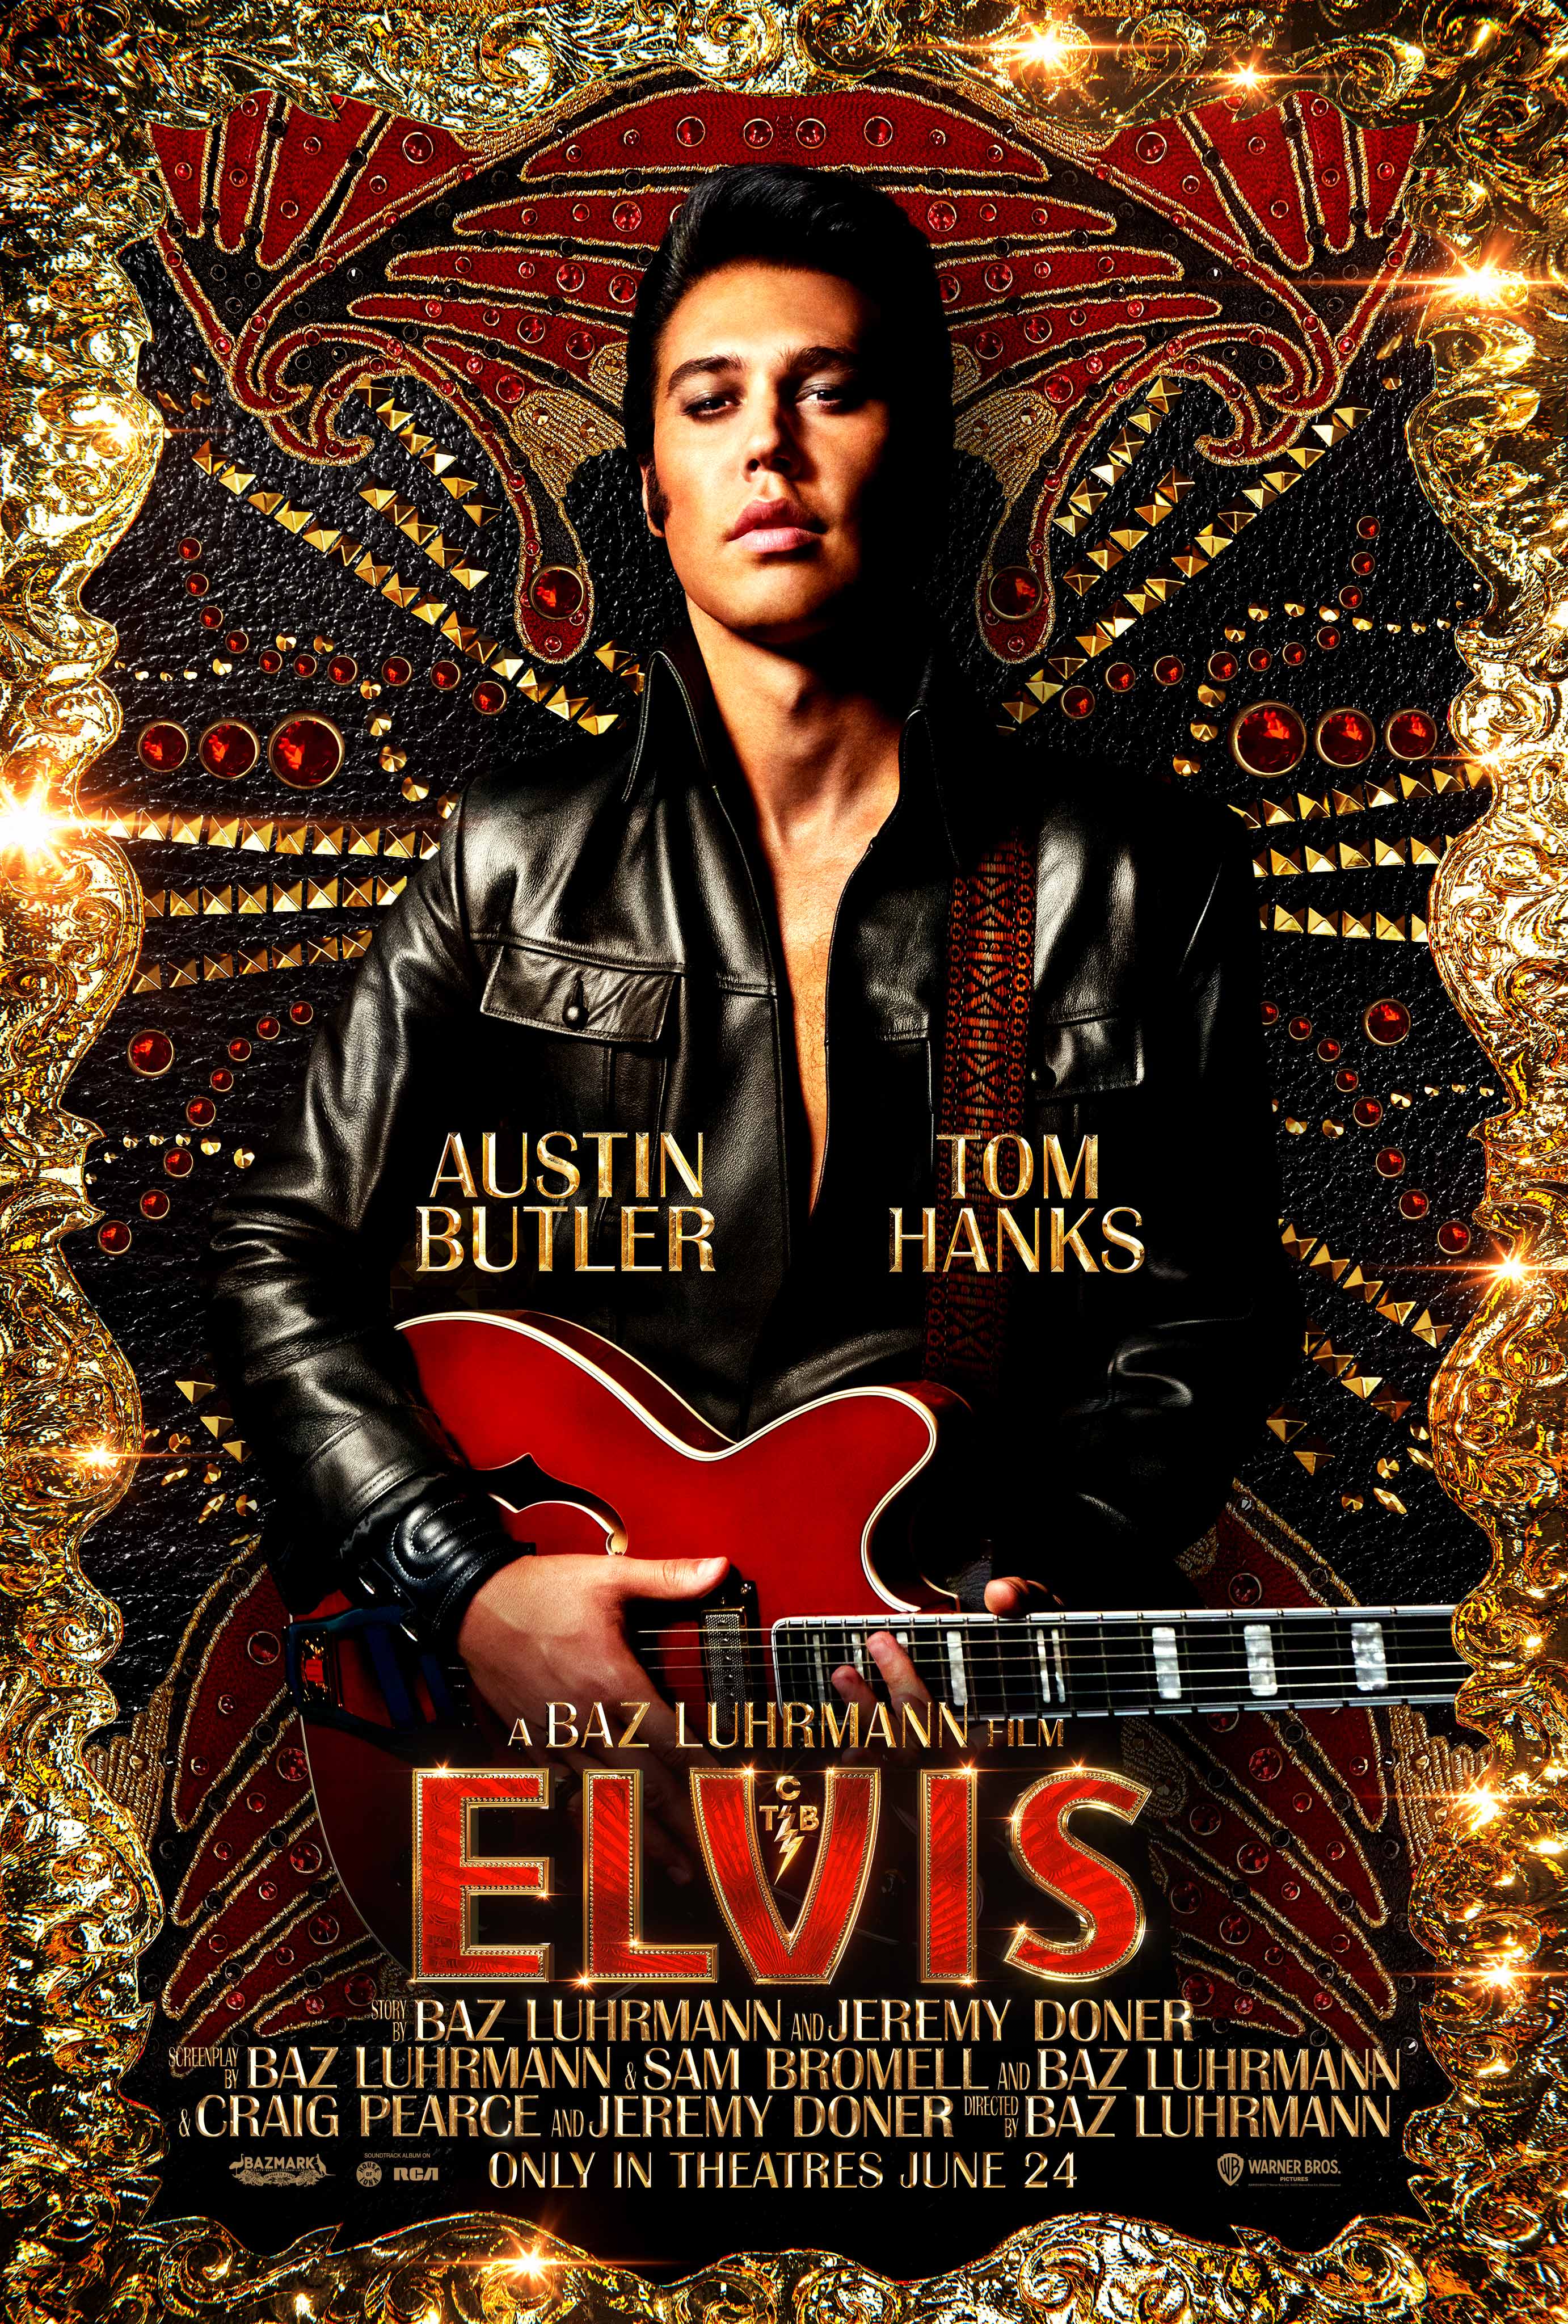 Cover Art for "Elvis"